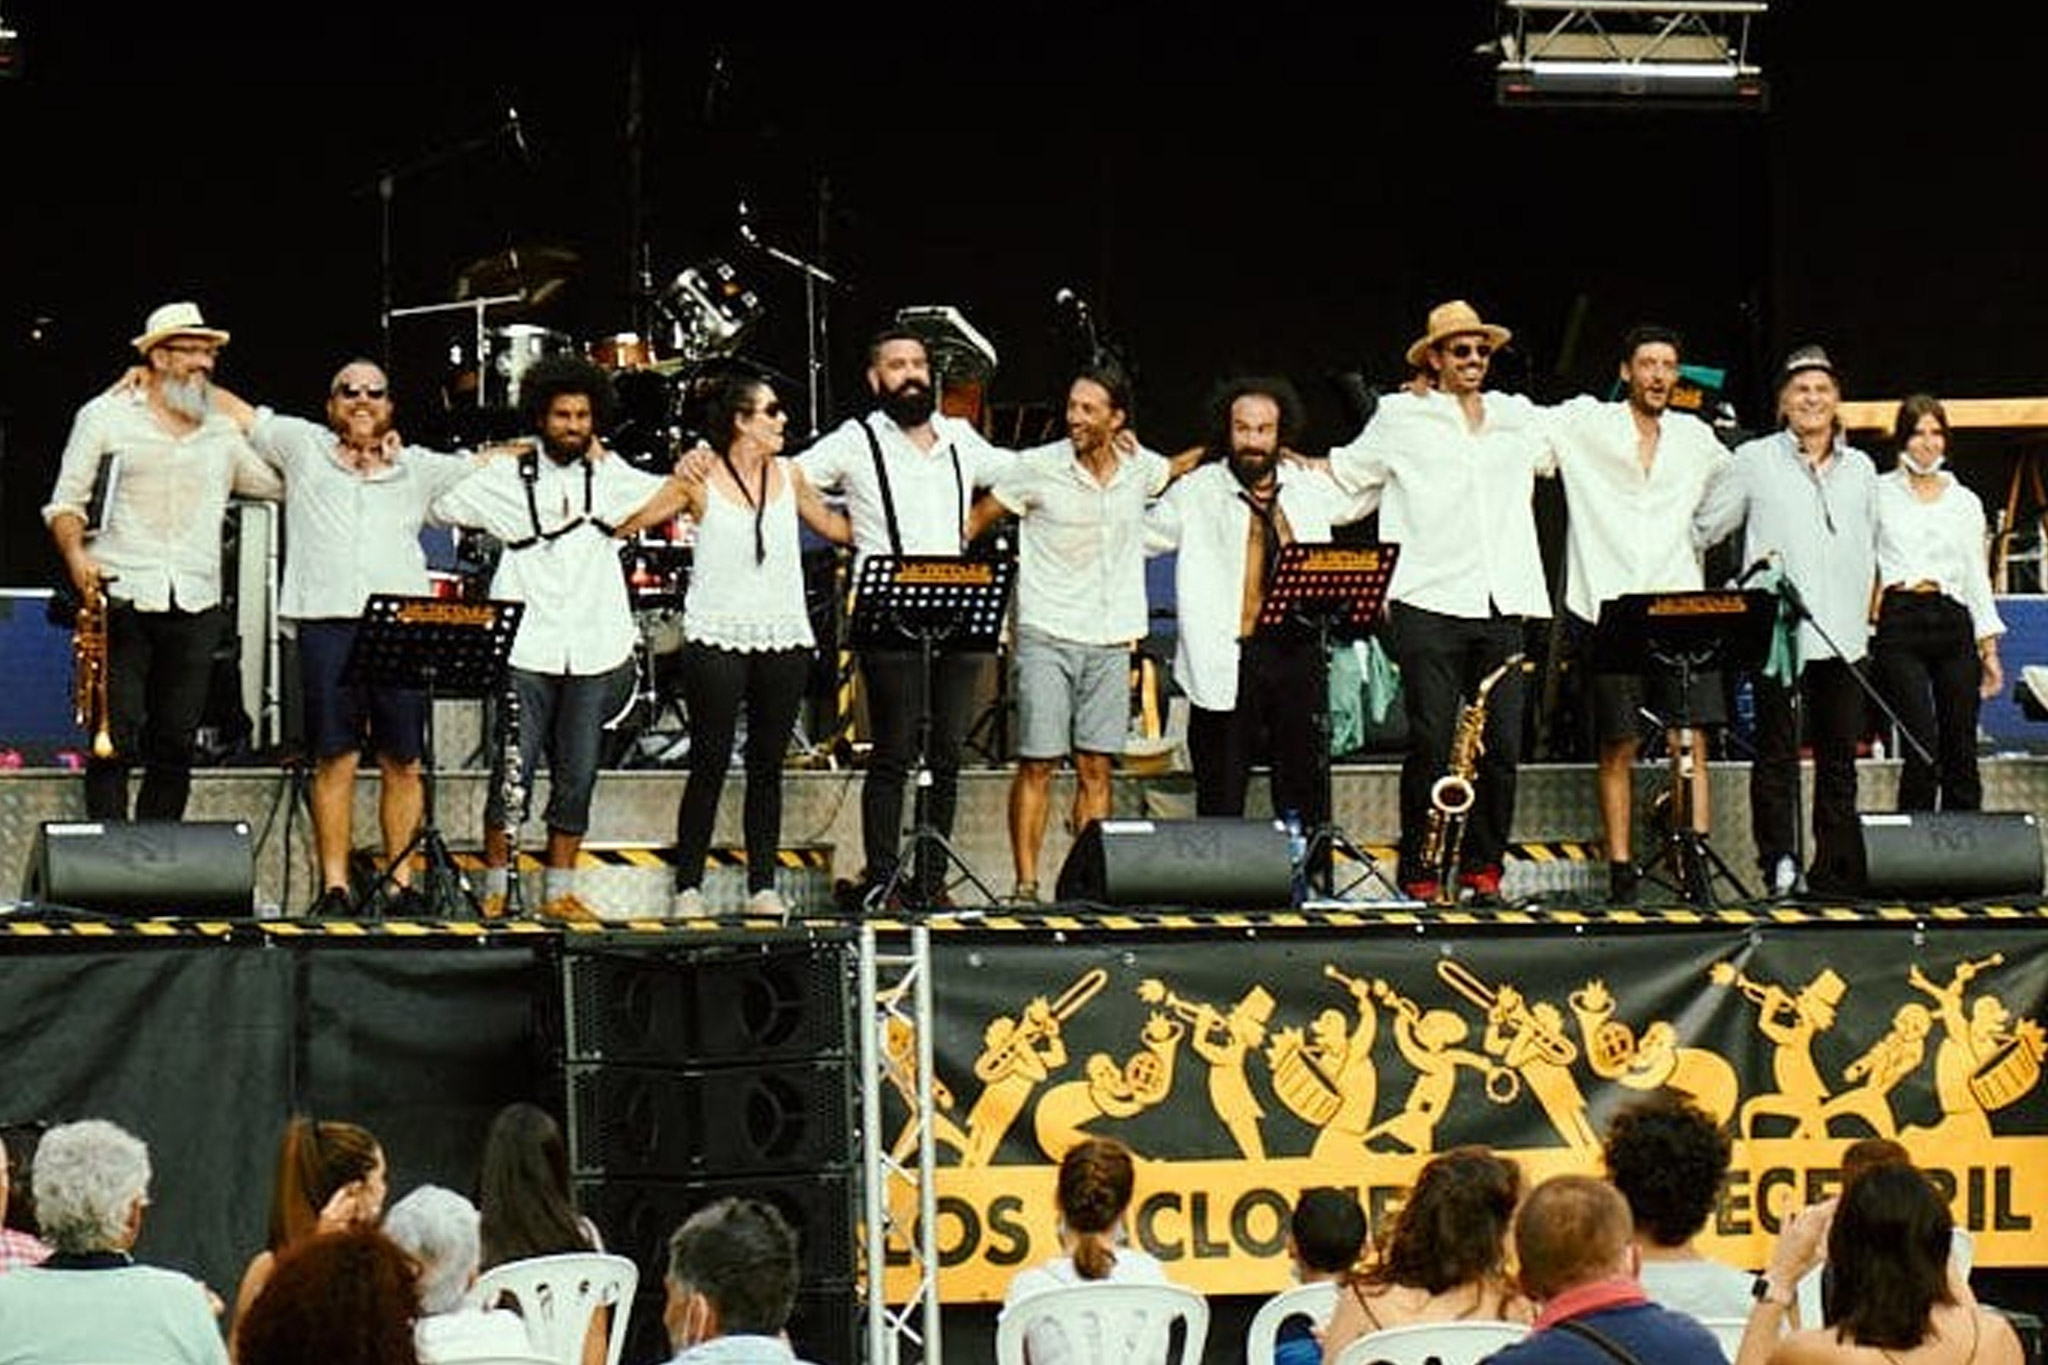 Los Ciclones del Becerril, c'est une histoire d'amitié qui s'est construite au fur et à mesure des années. A la suite d'une rencontre fort enjouée avec La Collectore, la bande de joyeux espagnols est venue au premier Pressoir, en 2010. De là est née l'idée de monter un groupe, qui se produit depuis plusieurs années maintenant, et même un festival, tous les étés !!